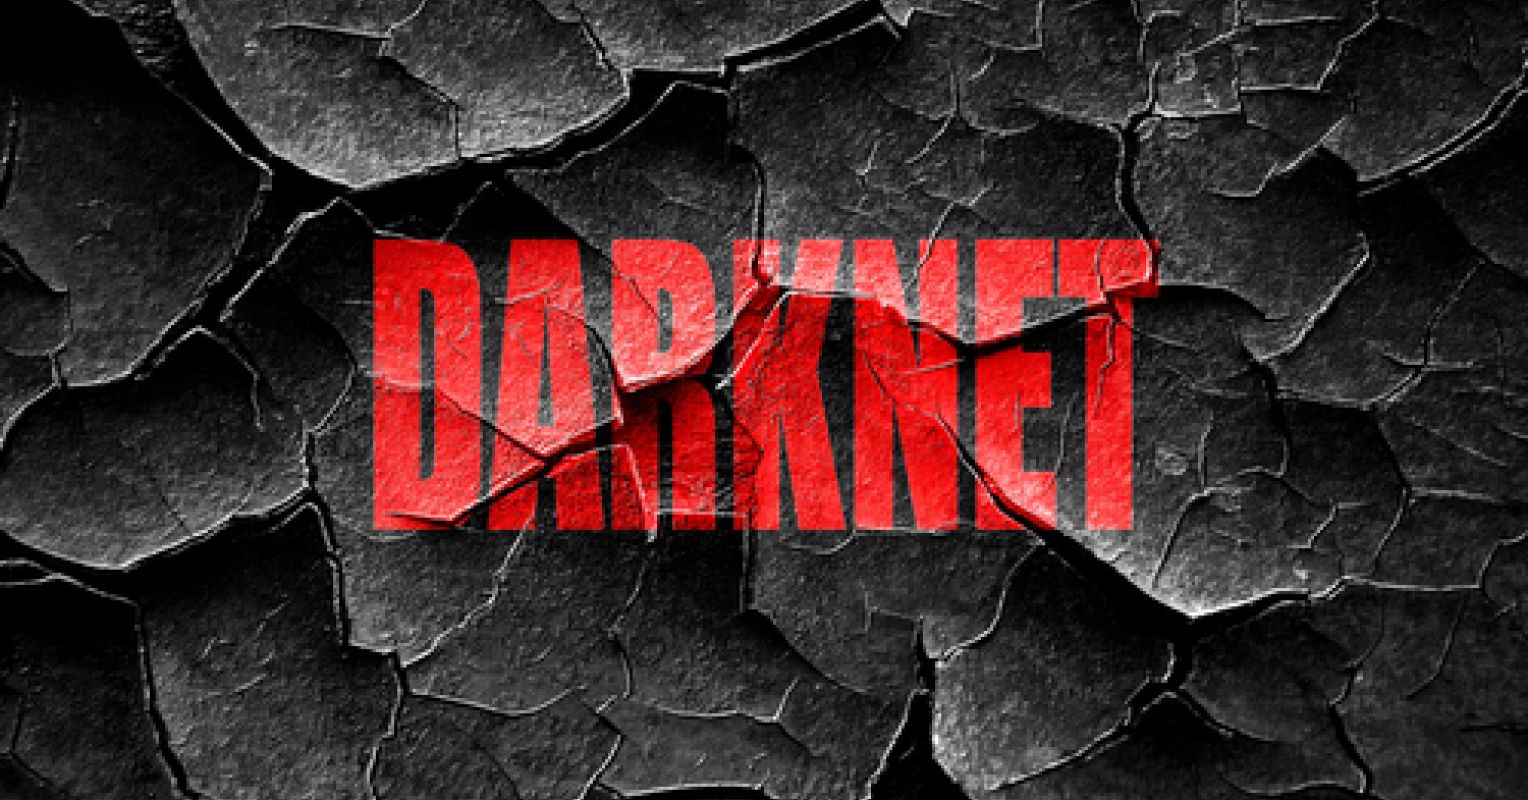 Darknet teen скачать с торрента тор браузер на русском бесплатно через торрент mega